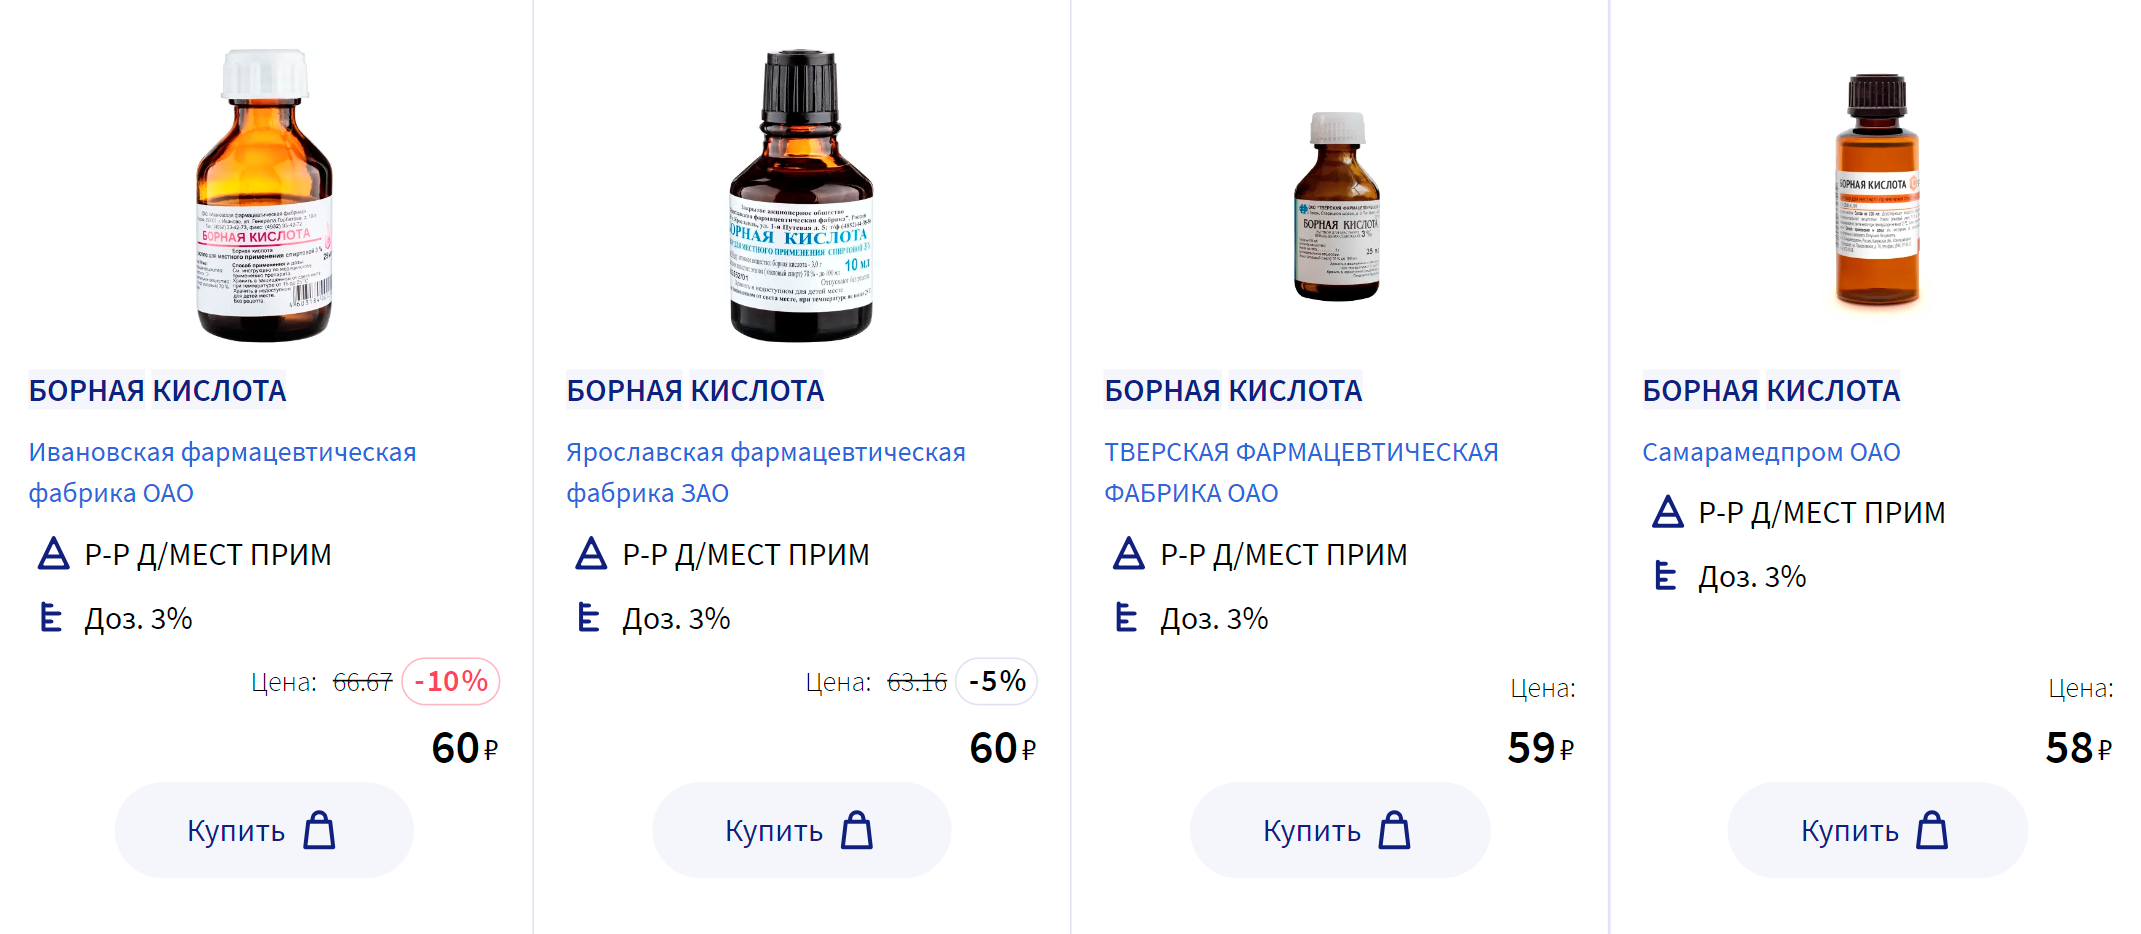 Борная кислота стоит недорого, а продается в любой аптеке. Источник: apteka.ru